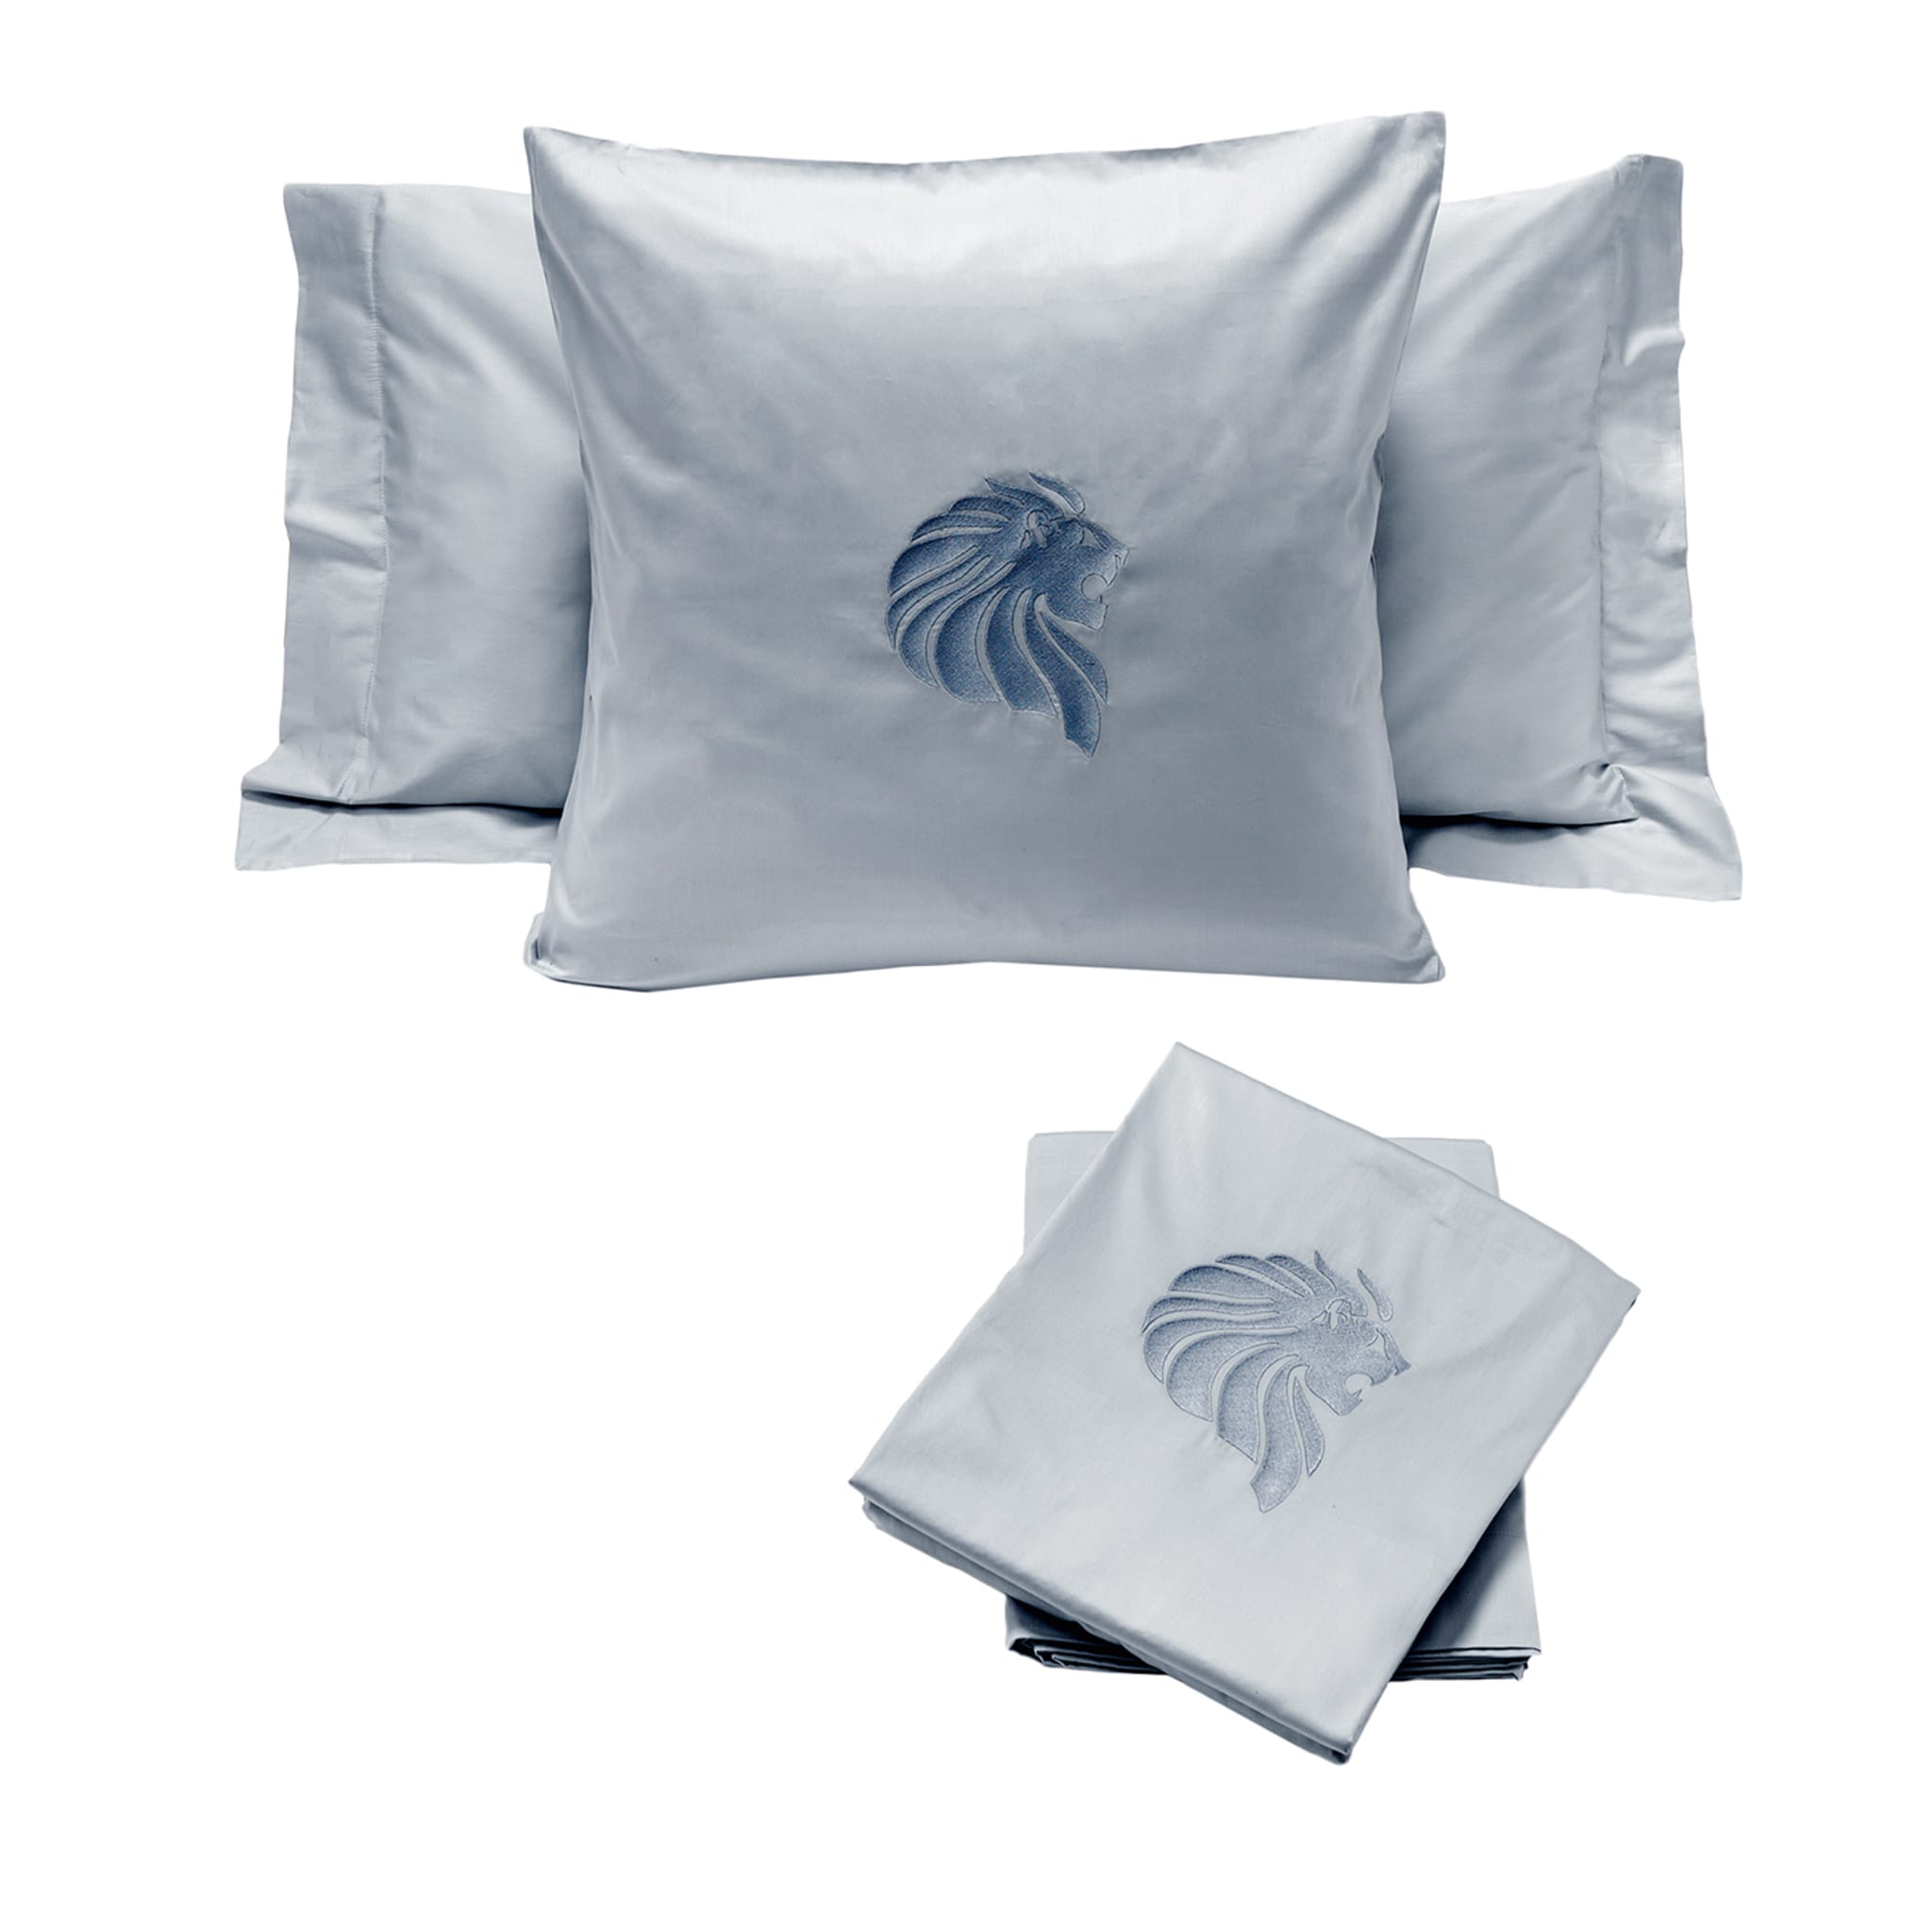 Light Blue Bed Linen & Pillows Set #2 - Main view